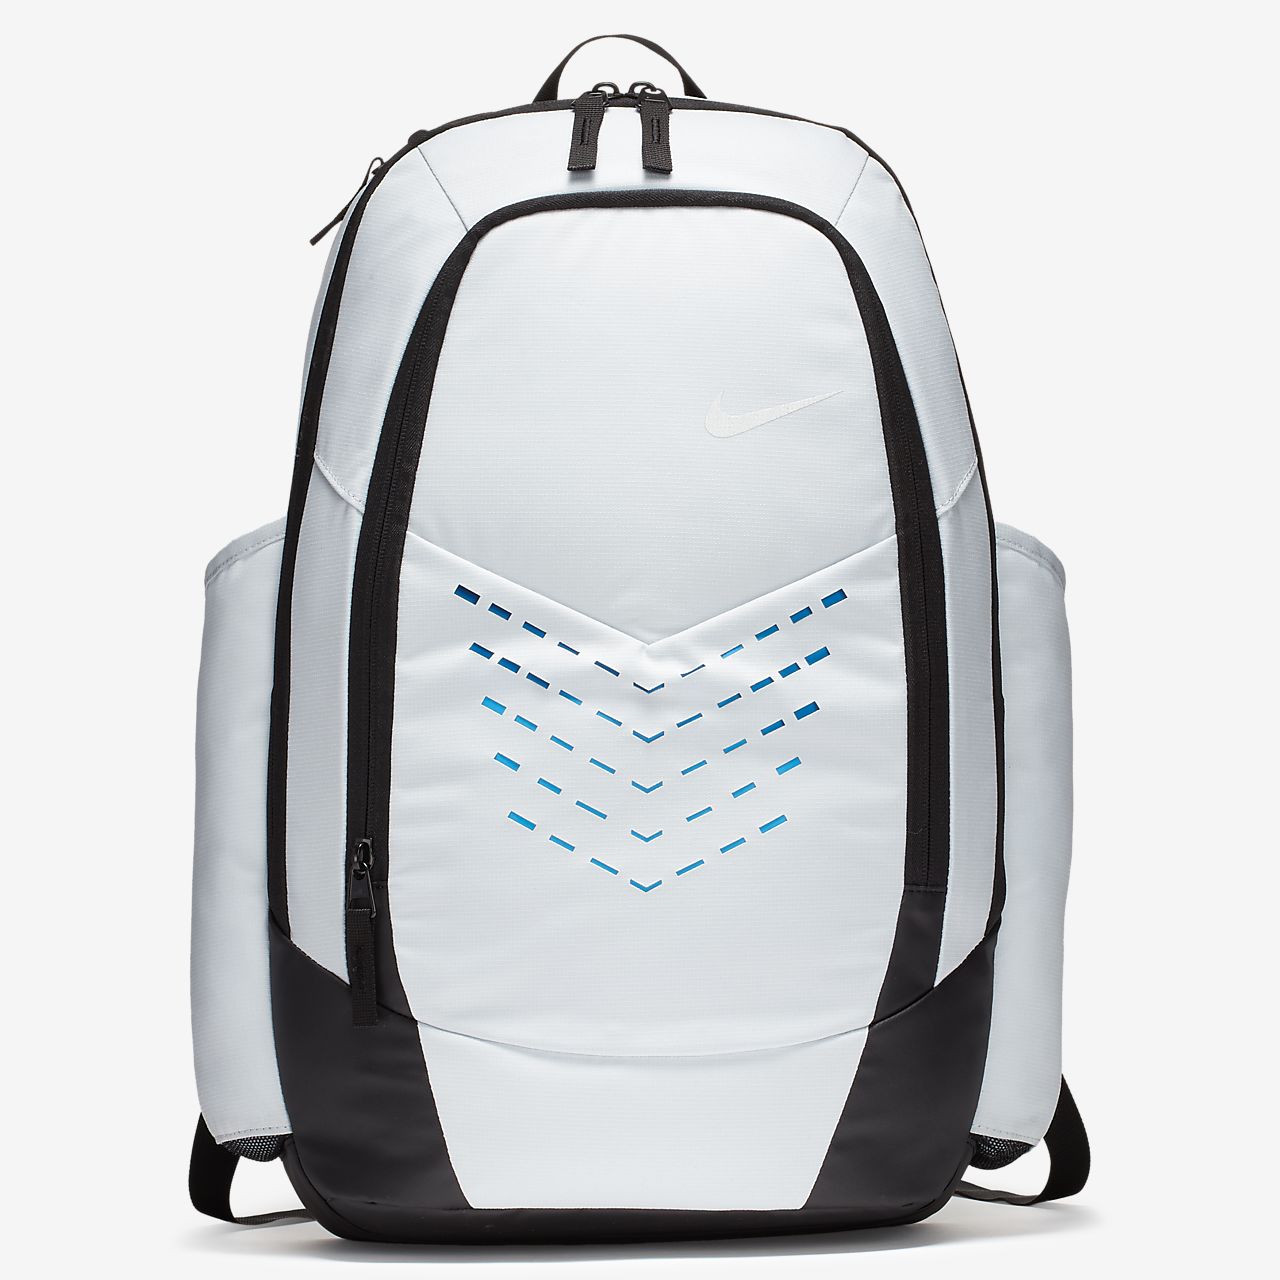 nike vapor backpack 2015